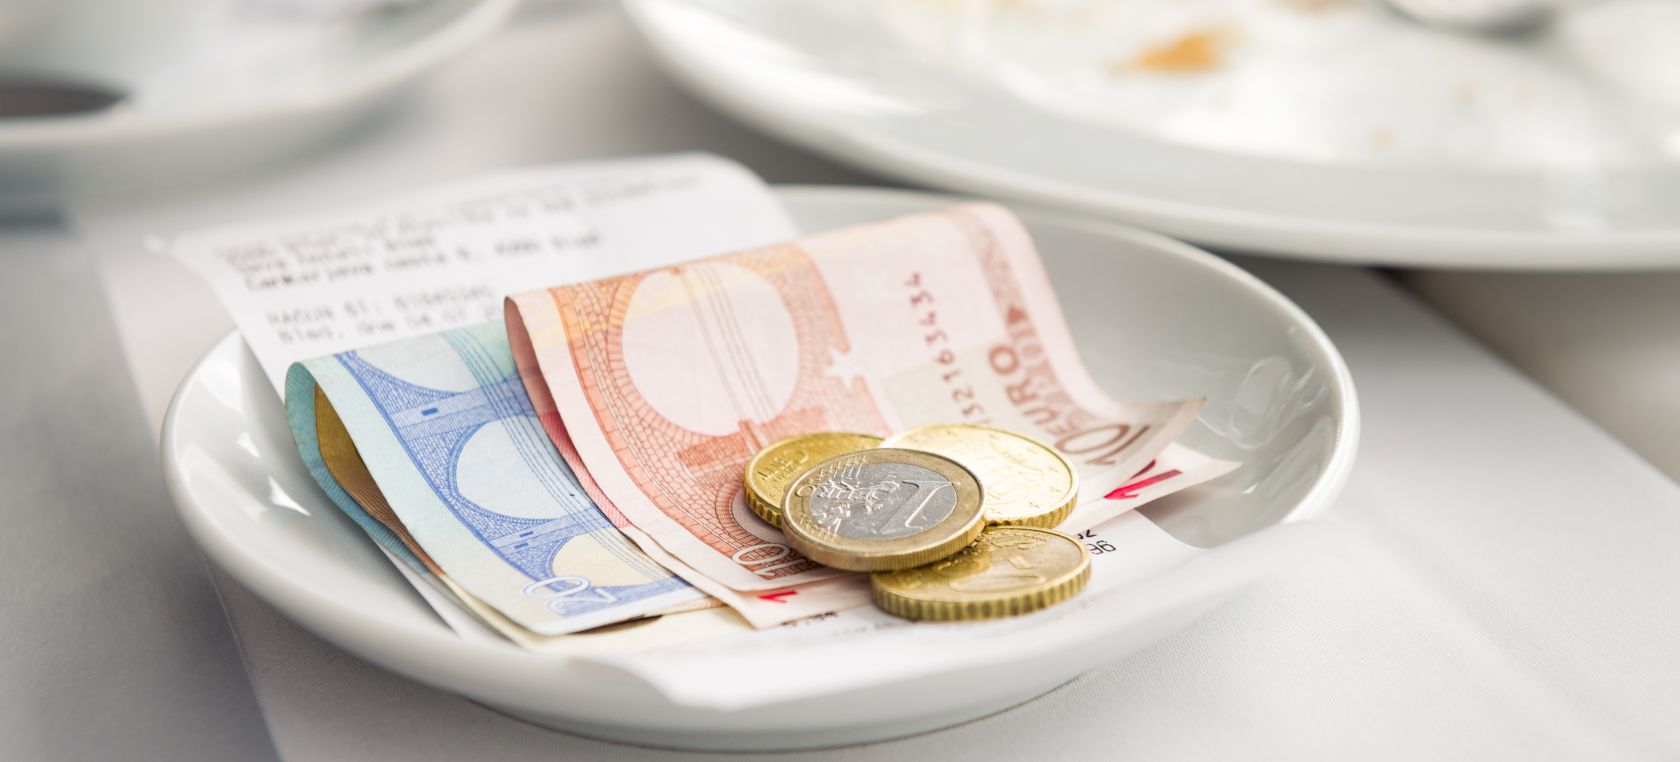 ¿Es posible comer gratis en restaurantes sin pagar durante 6 años?